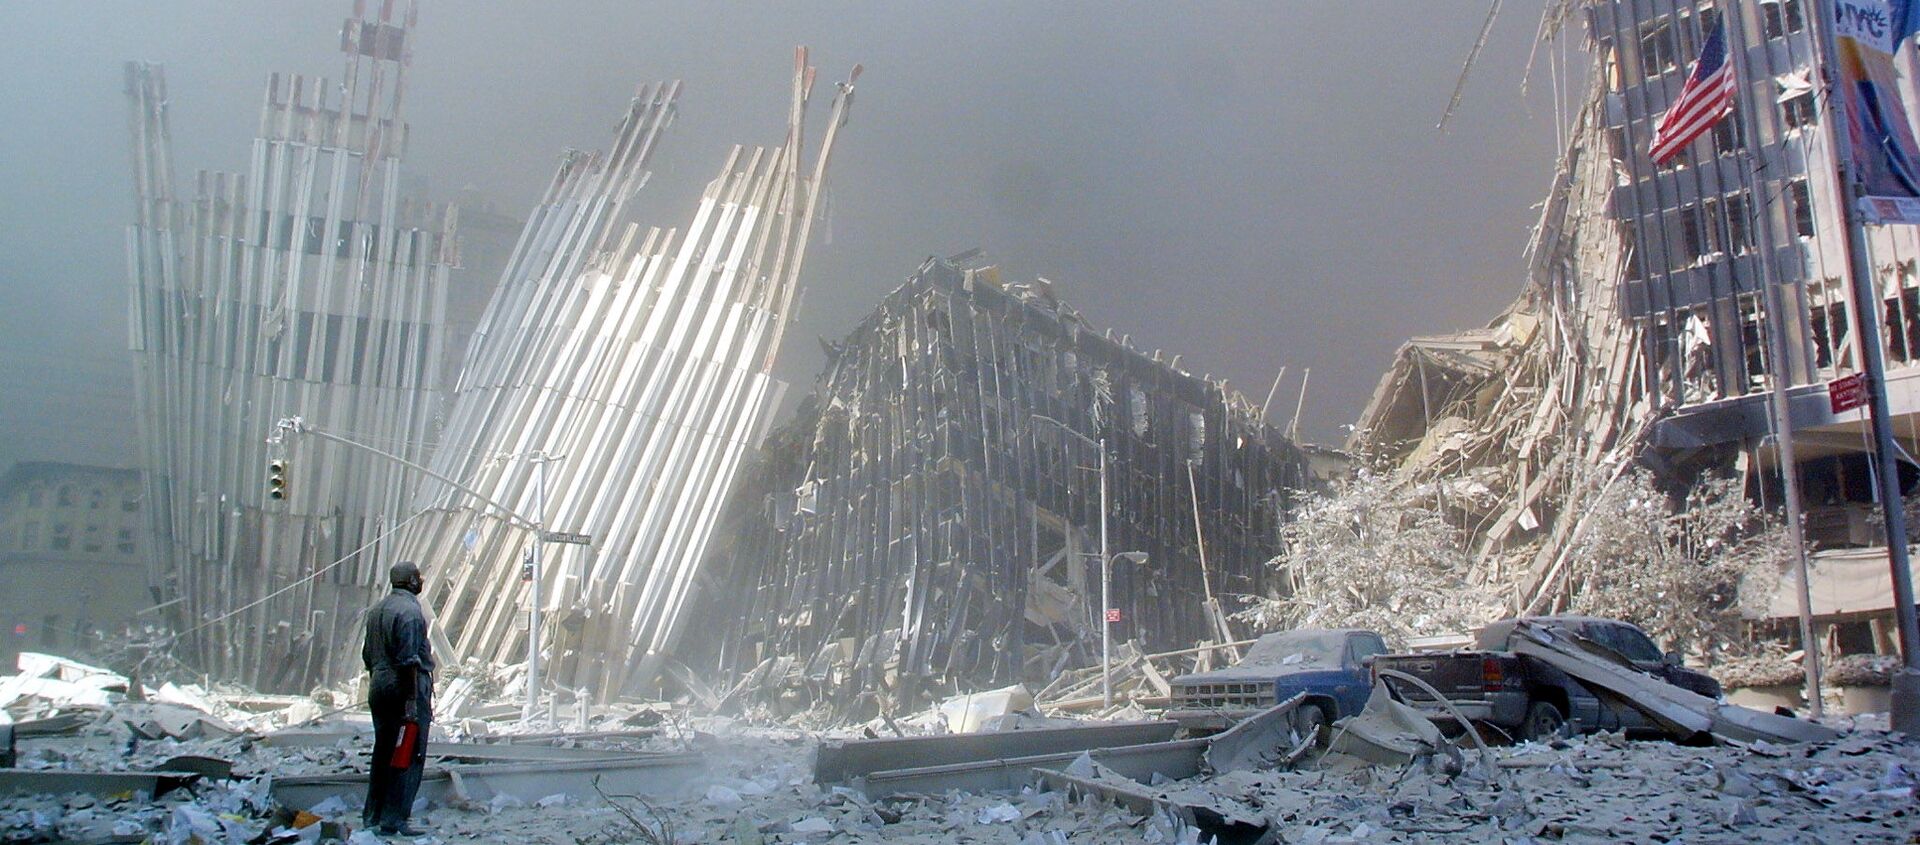 Čovek na ruševinama Svetskog trgovinskog centra u Njujorku nakon terorističkog napada 11. septembra 2001. godine. - Sputnik Srbija, 1920, 14.09.2019